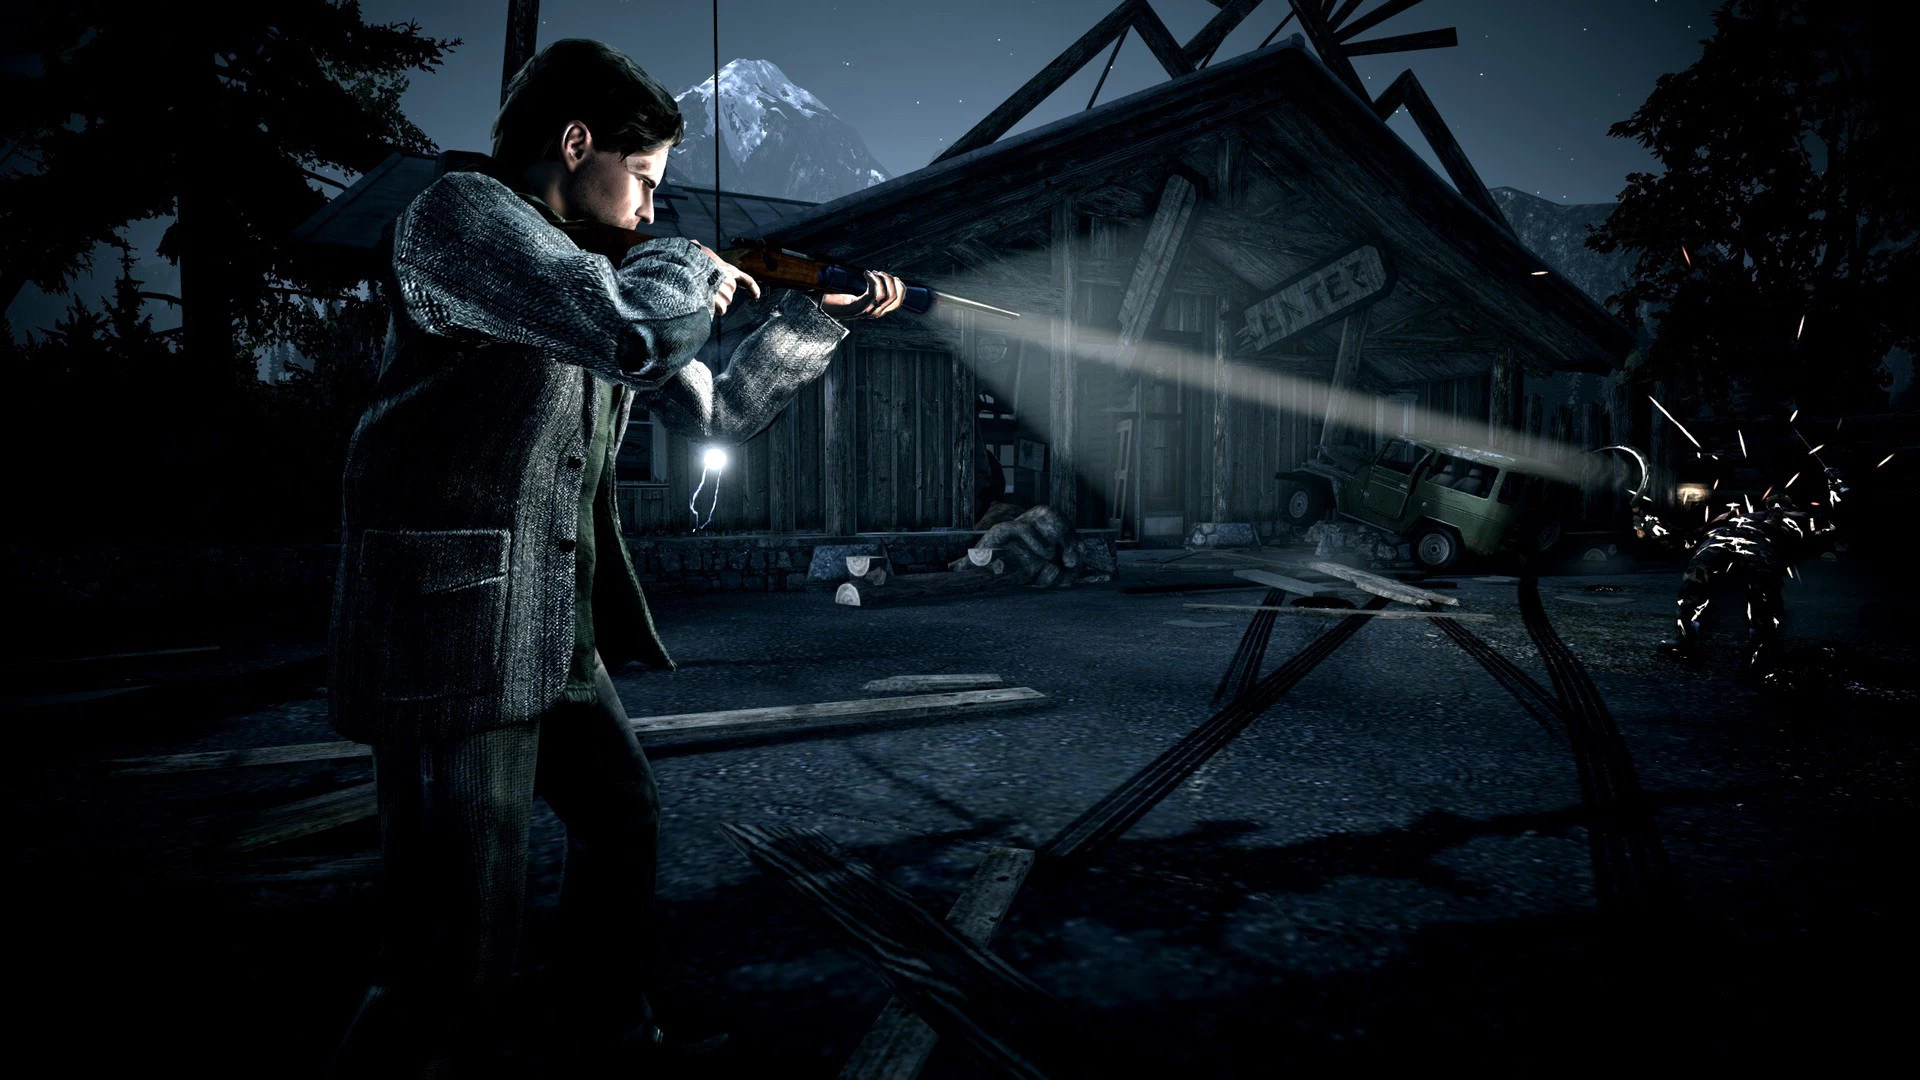 Alan Wake Remastered voor de PlayStation 5 kopen op nedgame.nl